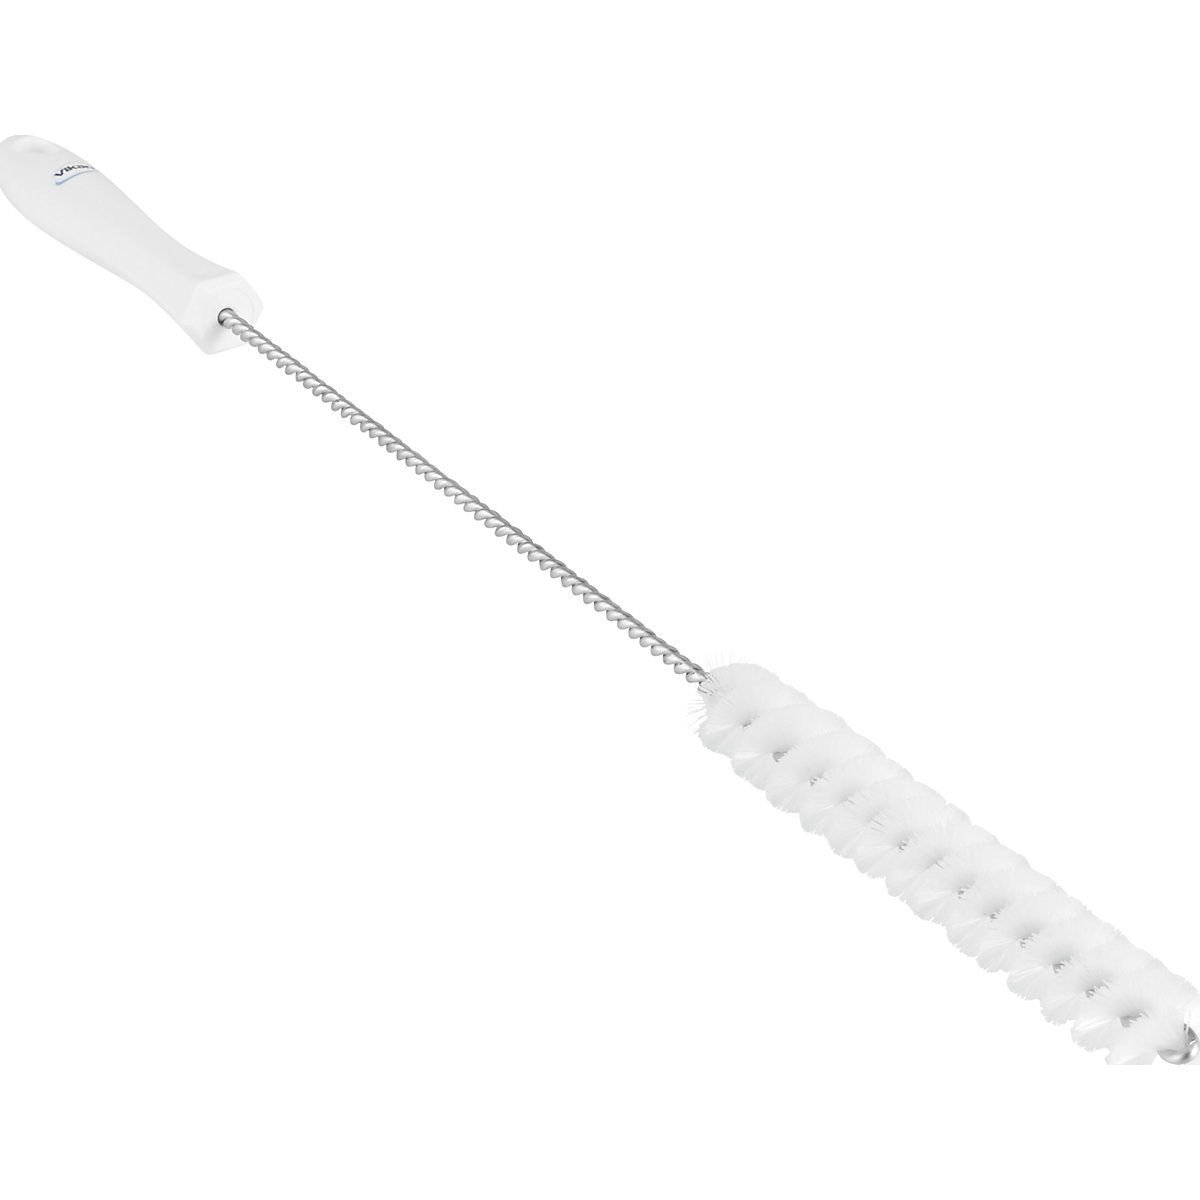 Vikan – Pipe brush with handle, medium, Ø 20 mm, pack of 15, white